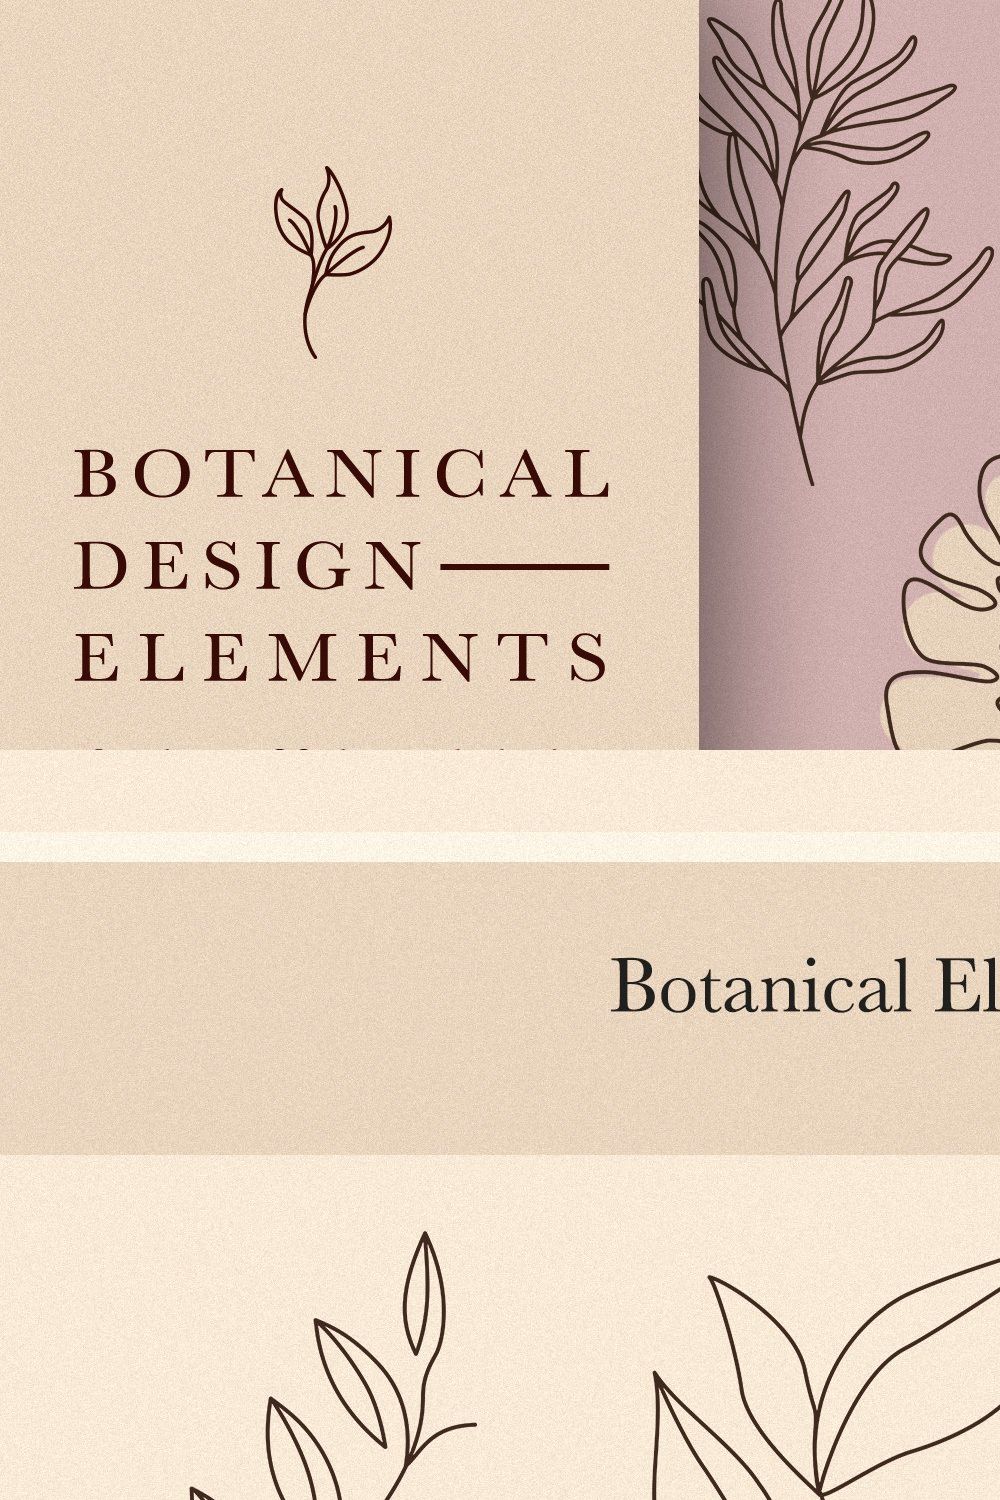 Botanical Elements for Logo Design pinterest preview image.